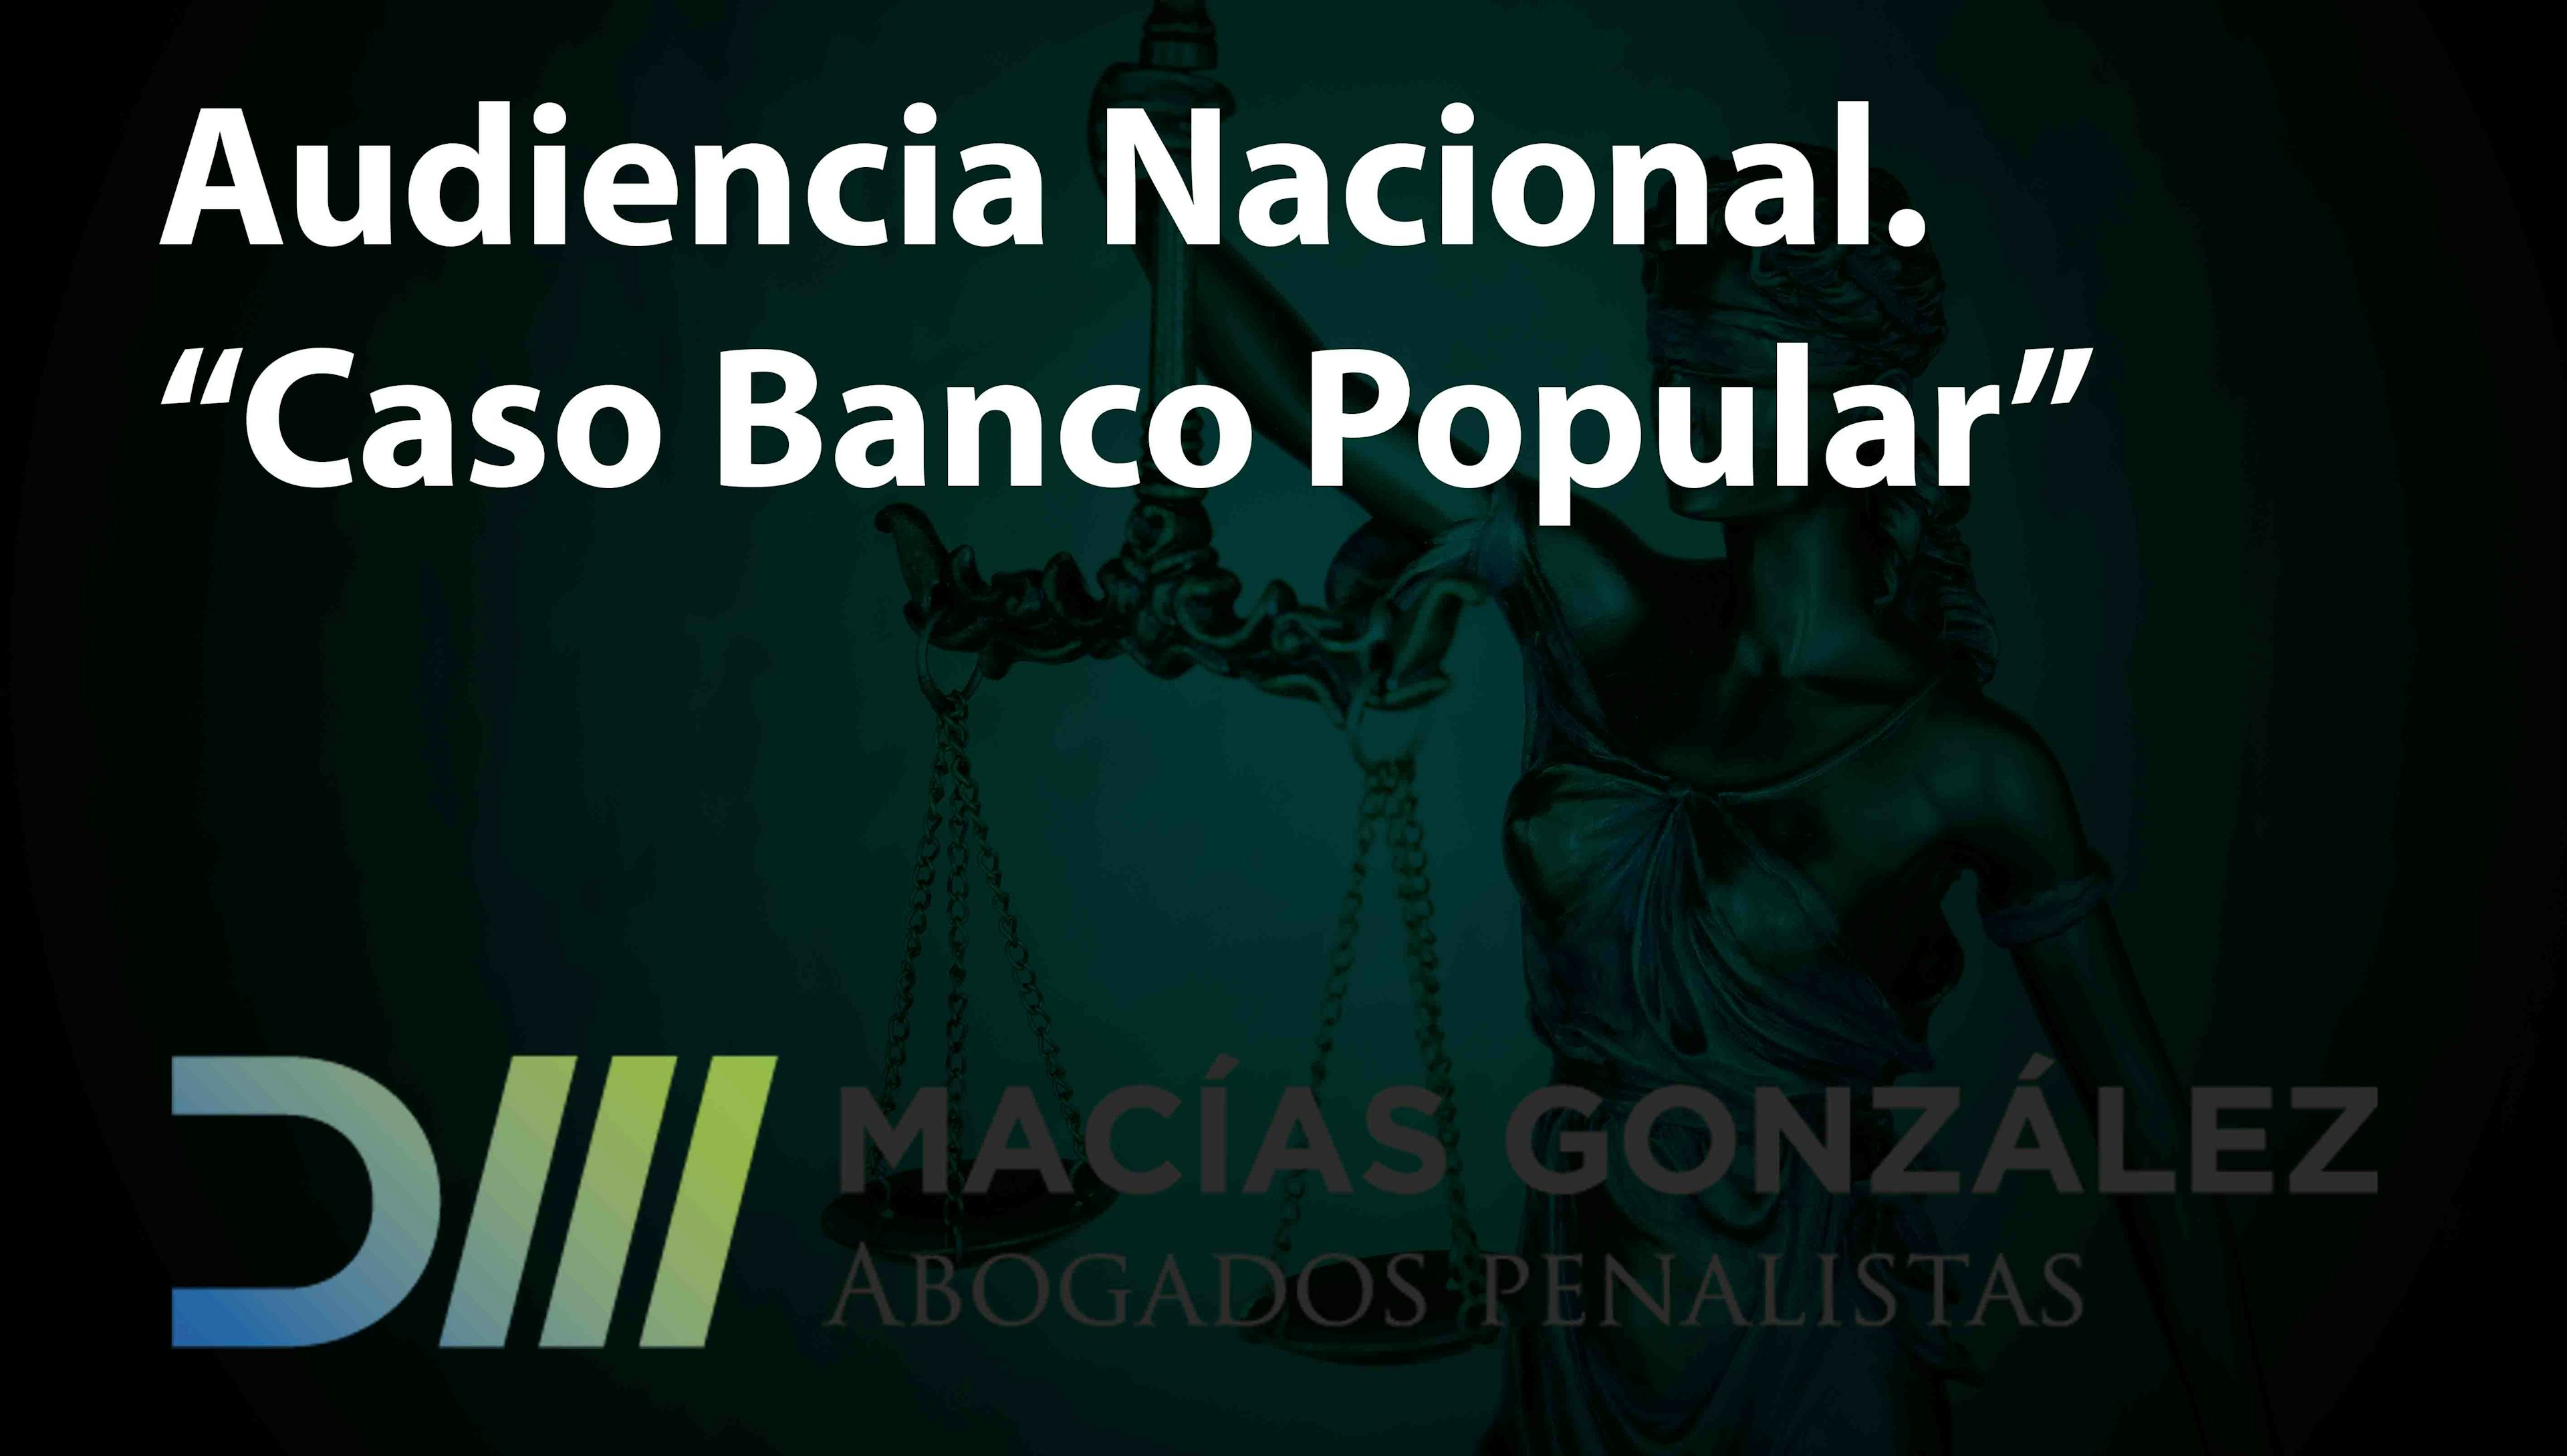 AUDIENCIA NACIONAL. “CASO BANCO POPULAR”